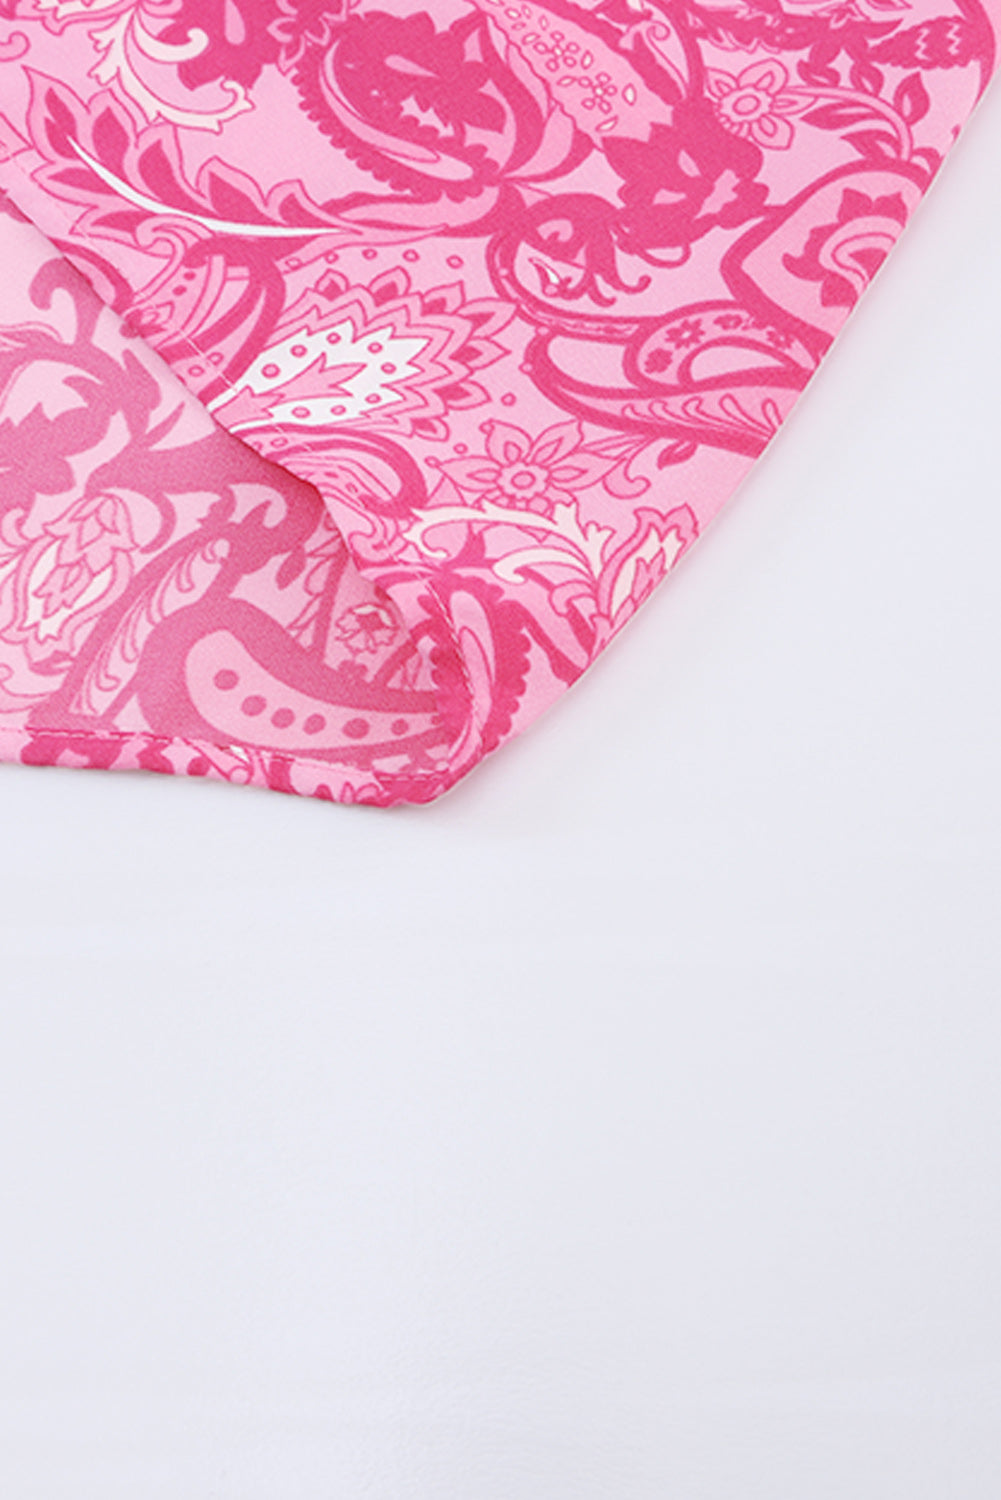 Robe longue à volants et à plusieurs niveaux style bohème imprimé cachemire rose